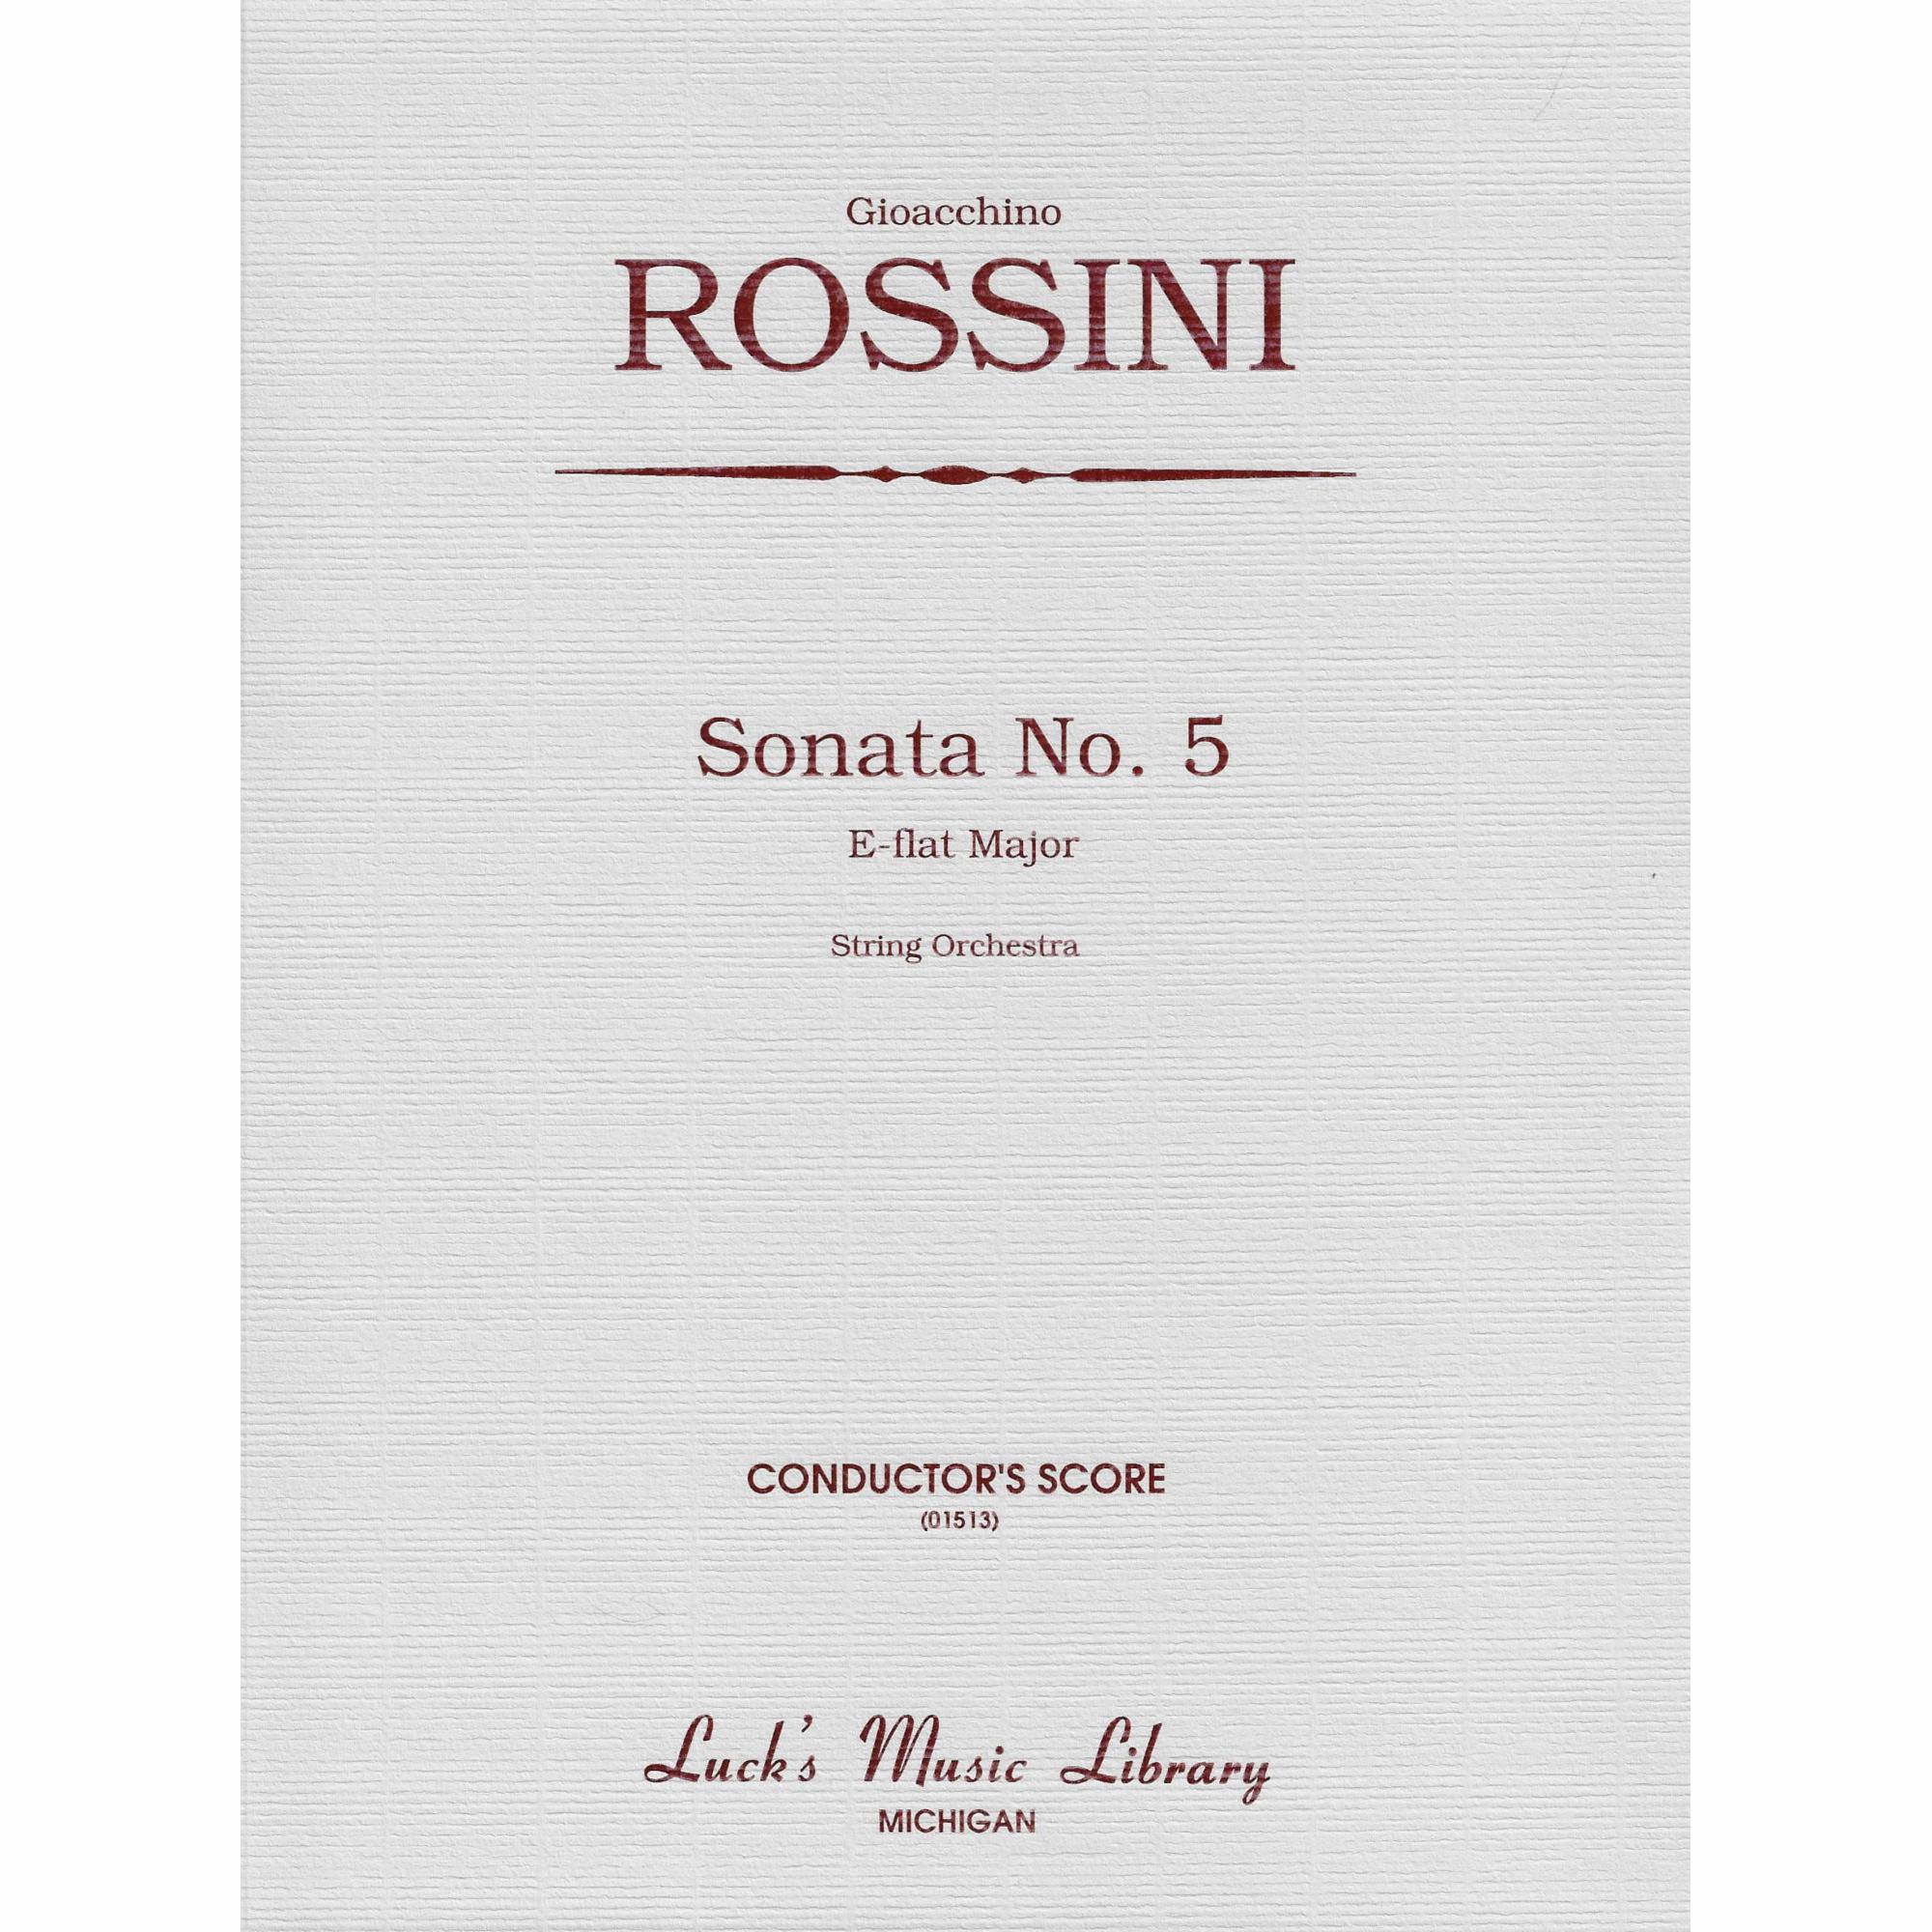 Rossini -- Sonata No. 5 in E-flat Major for String Orchestra